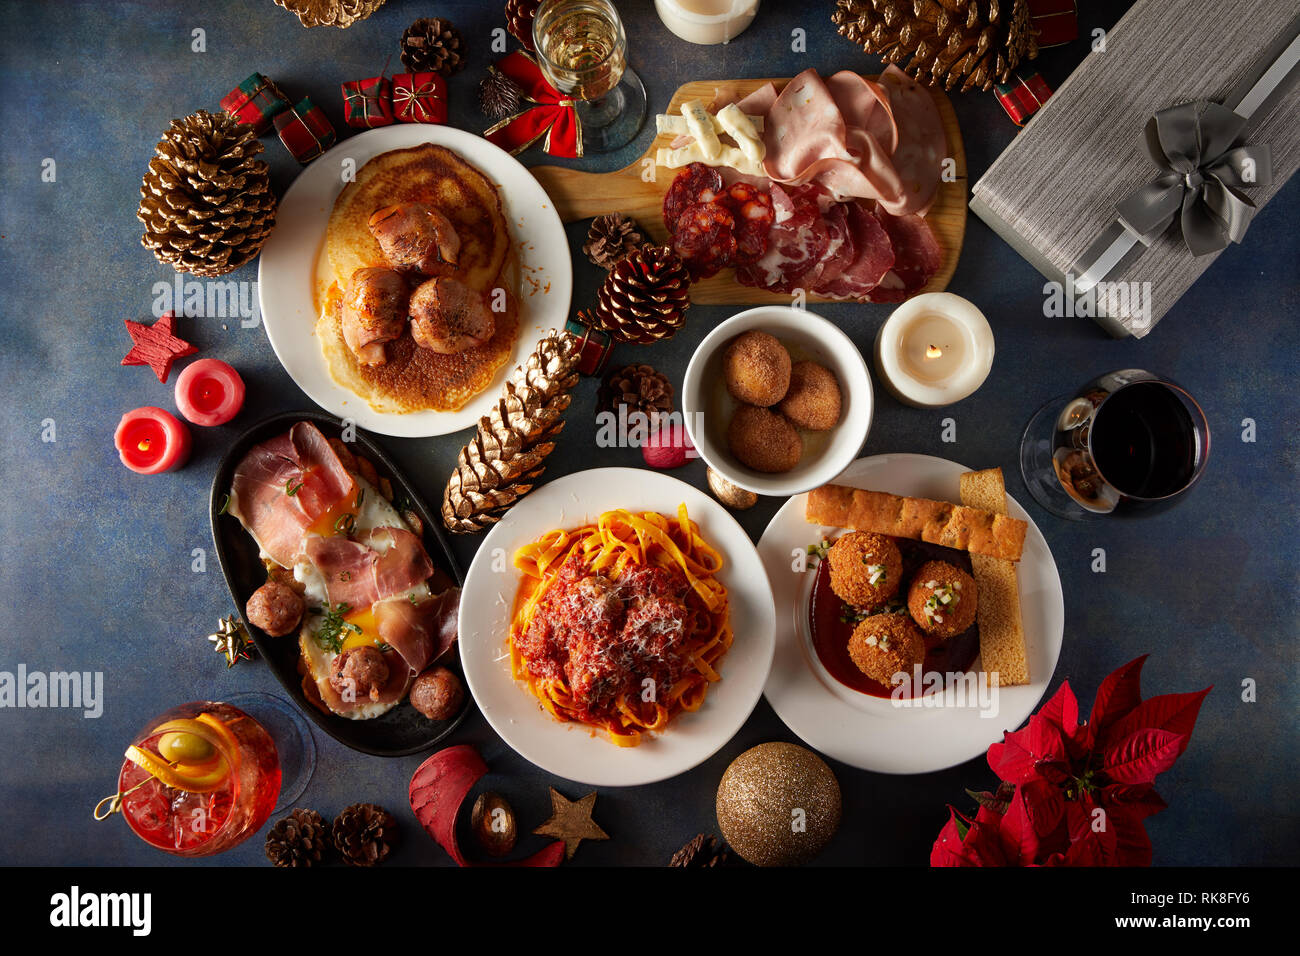 Plat d'une table de Noël avec différents types de boulettes de viande, pâtes, charcuterie et la décoration de Noël Banque D'Images